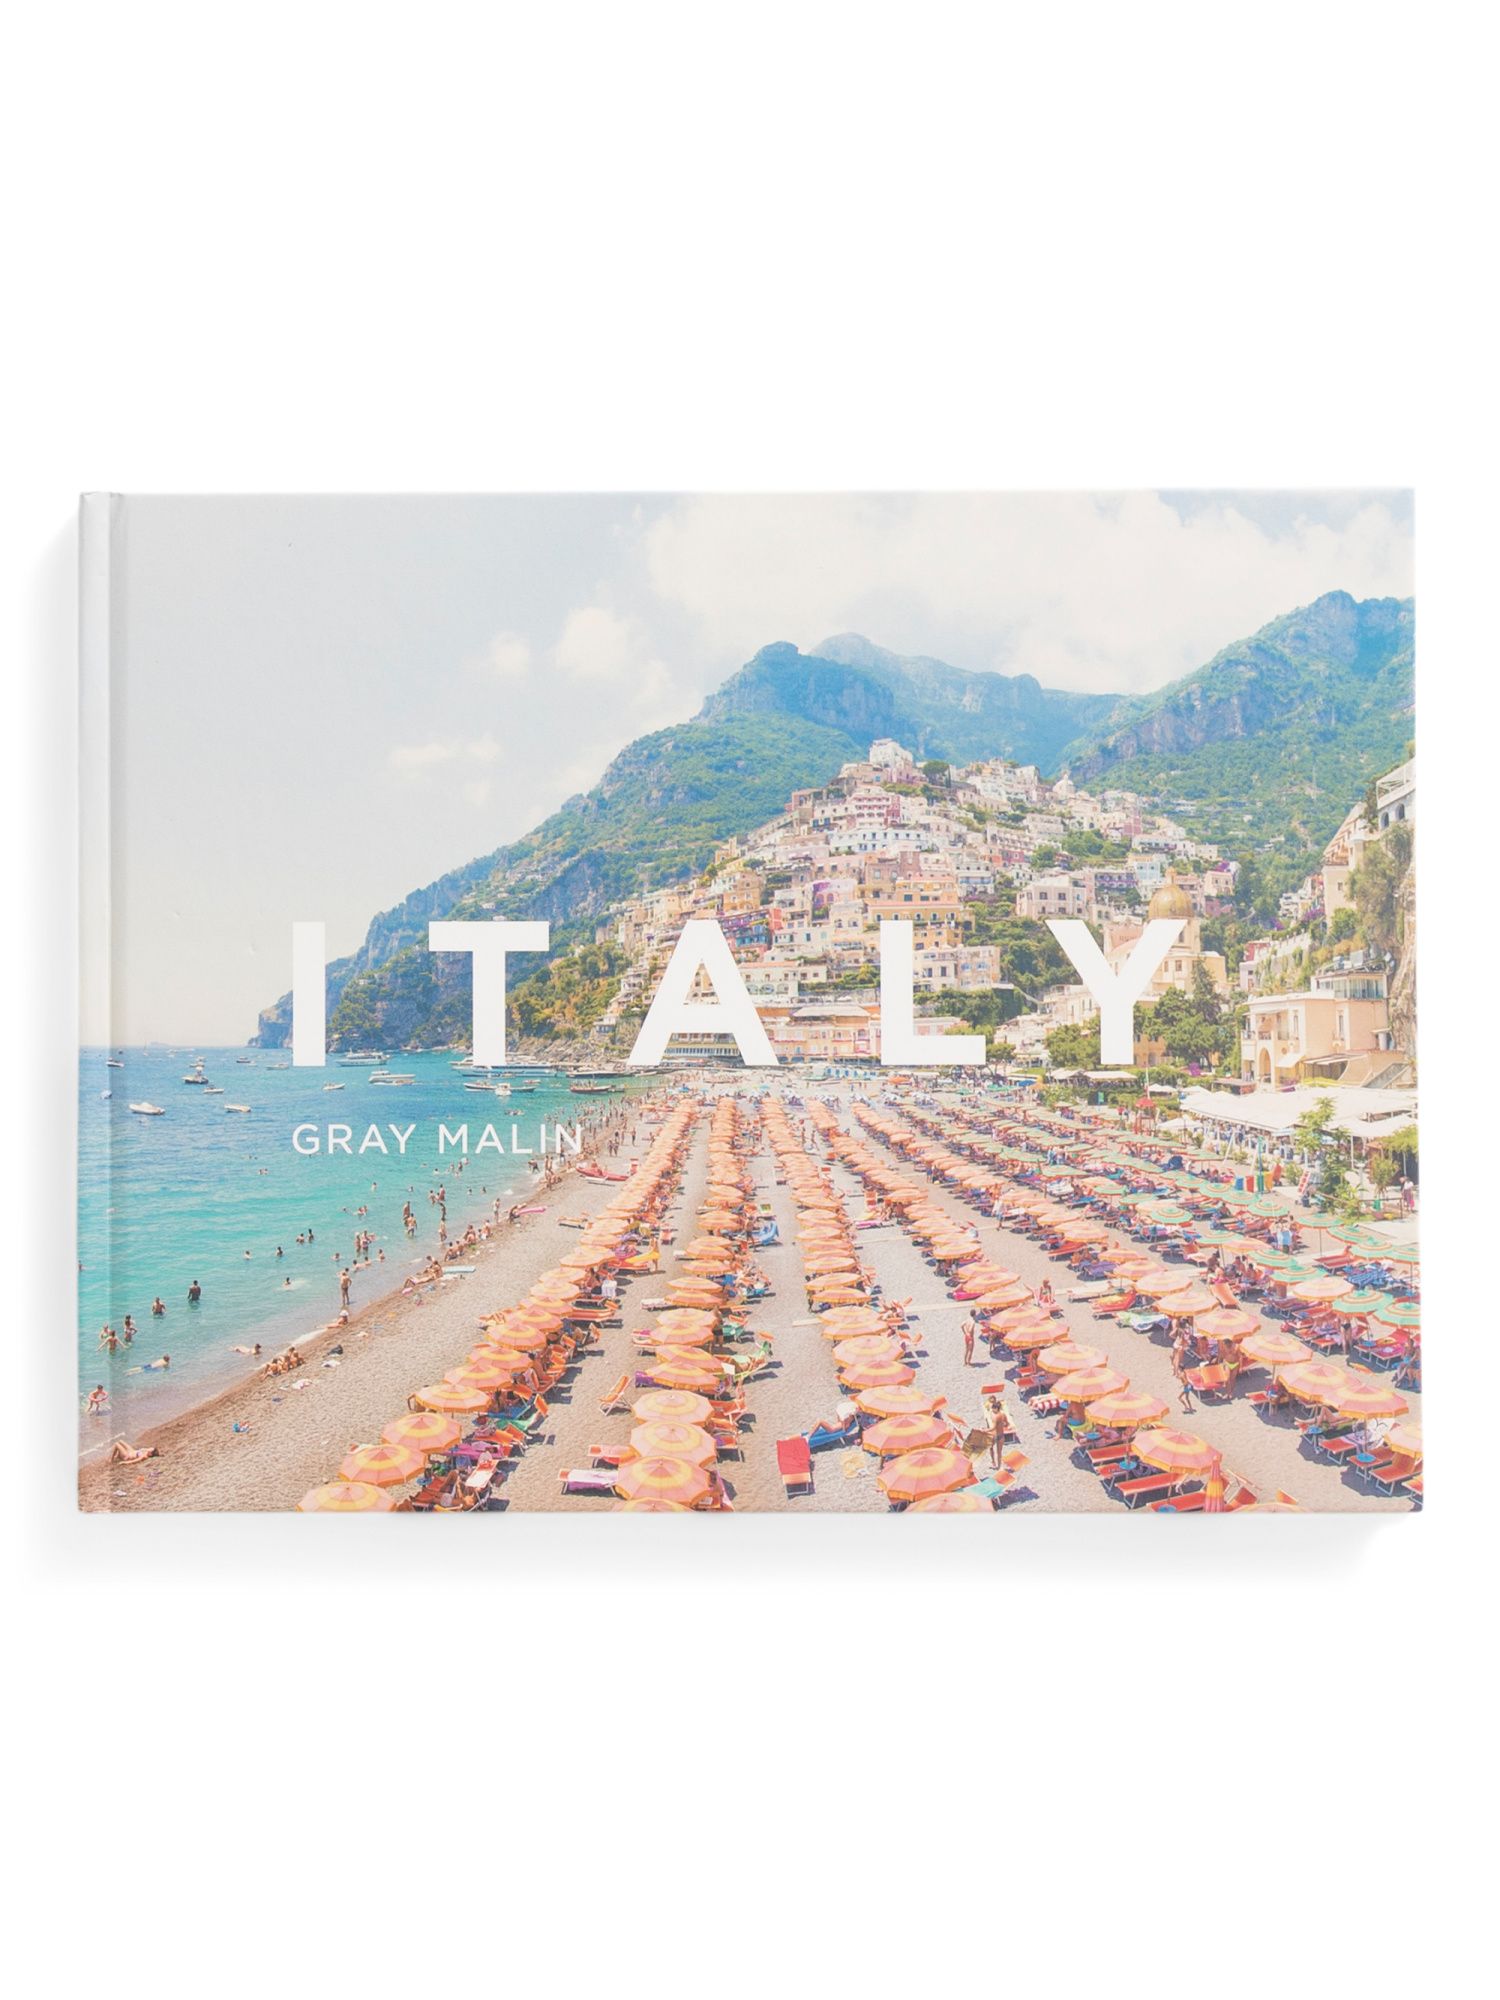 Gray Malin: Italy Book | Marshalls